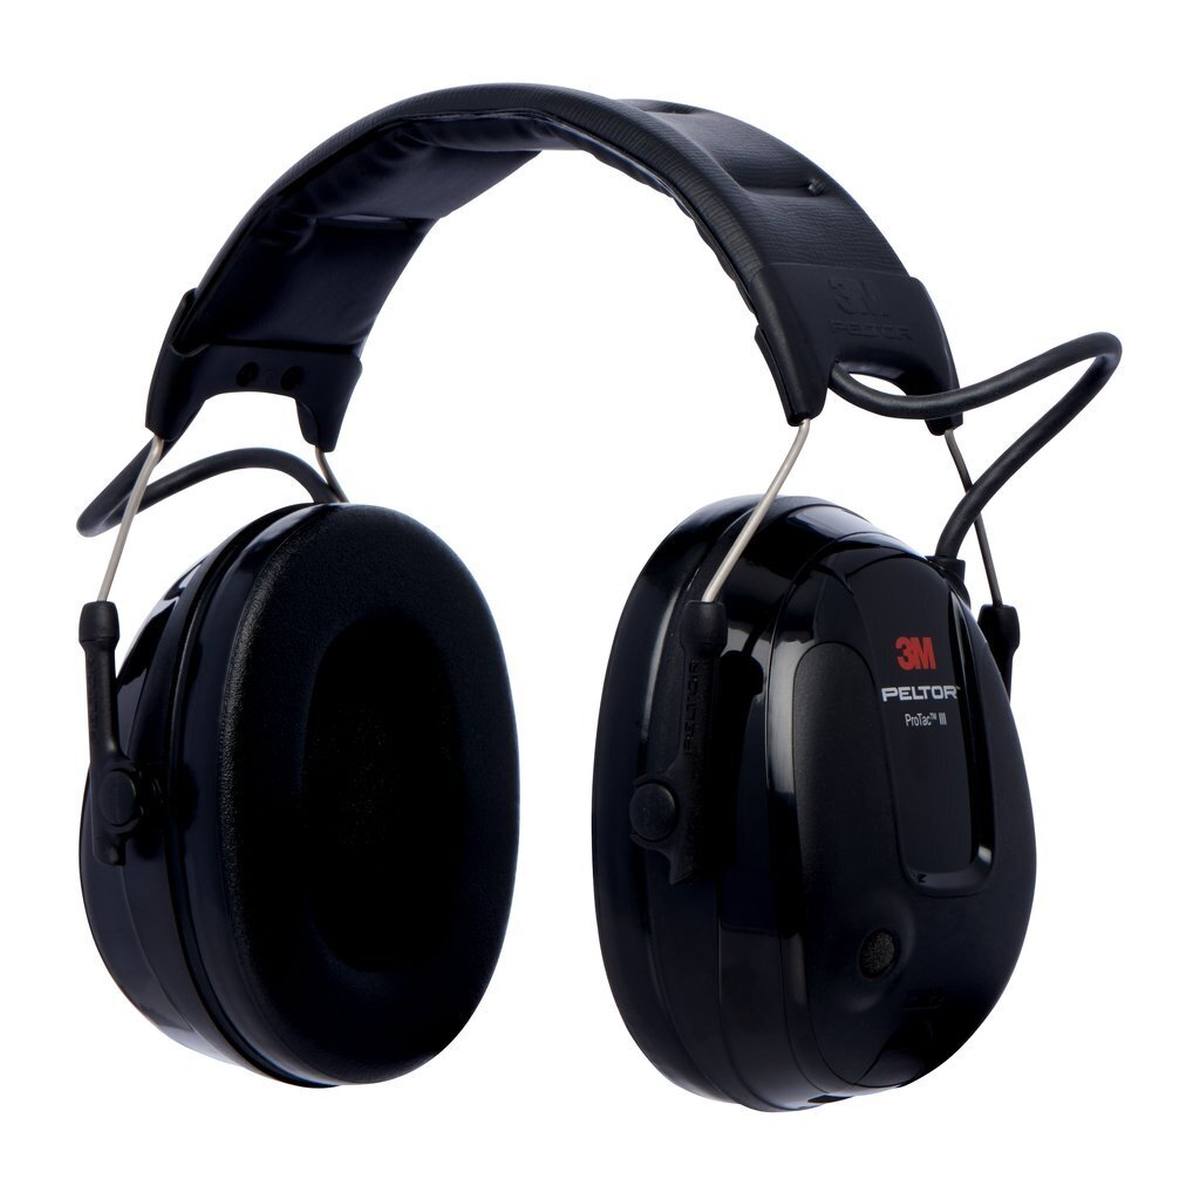 3M Peltor ProTac III Slim kuulonsuojaimet, musta, pääpanta, aktiivinen, tasosta riippuvainen vaimennustekniikka ympäristön melun havaitsemiseksi, SNR = 26 dB, musta